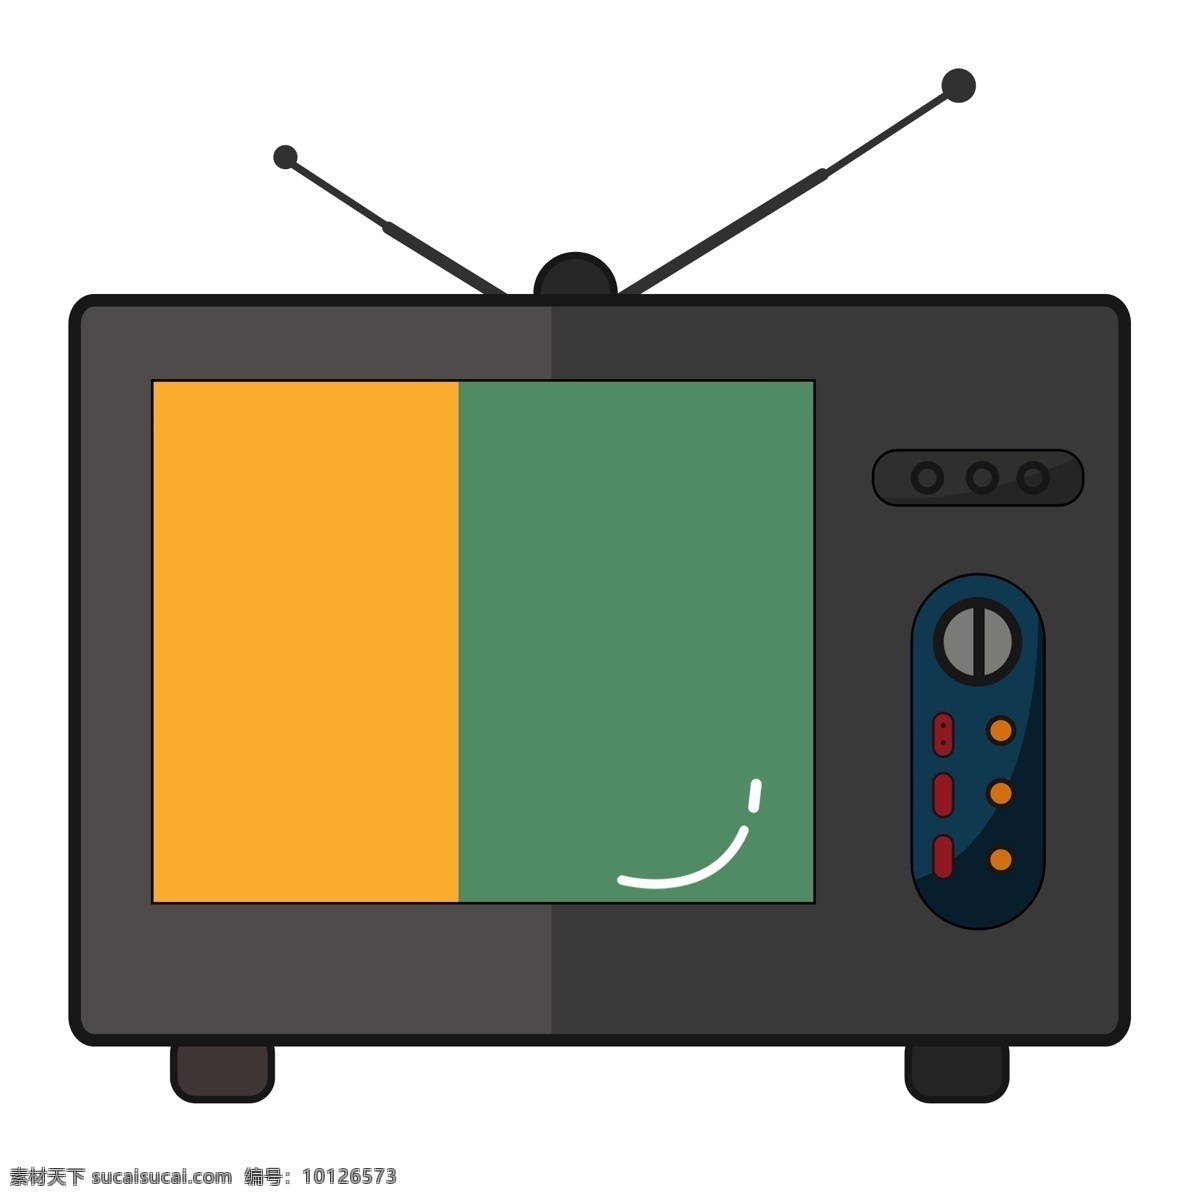 老式 电视机 手绘 插画 旧式电视机 黑色 彩绘电视机 卡通电视 家用电器 老式电视机 看电视 小电视